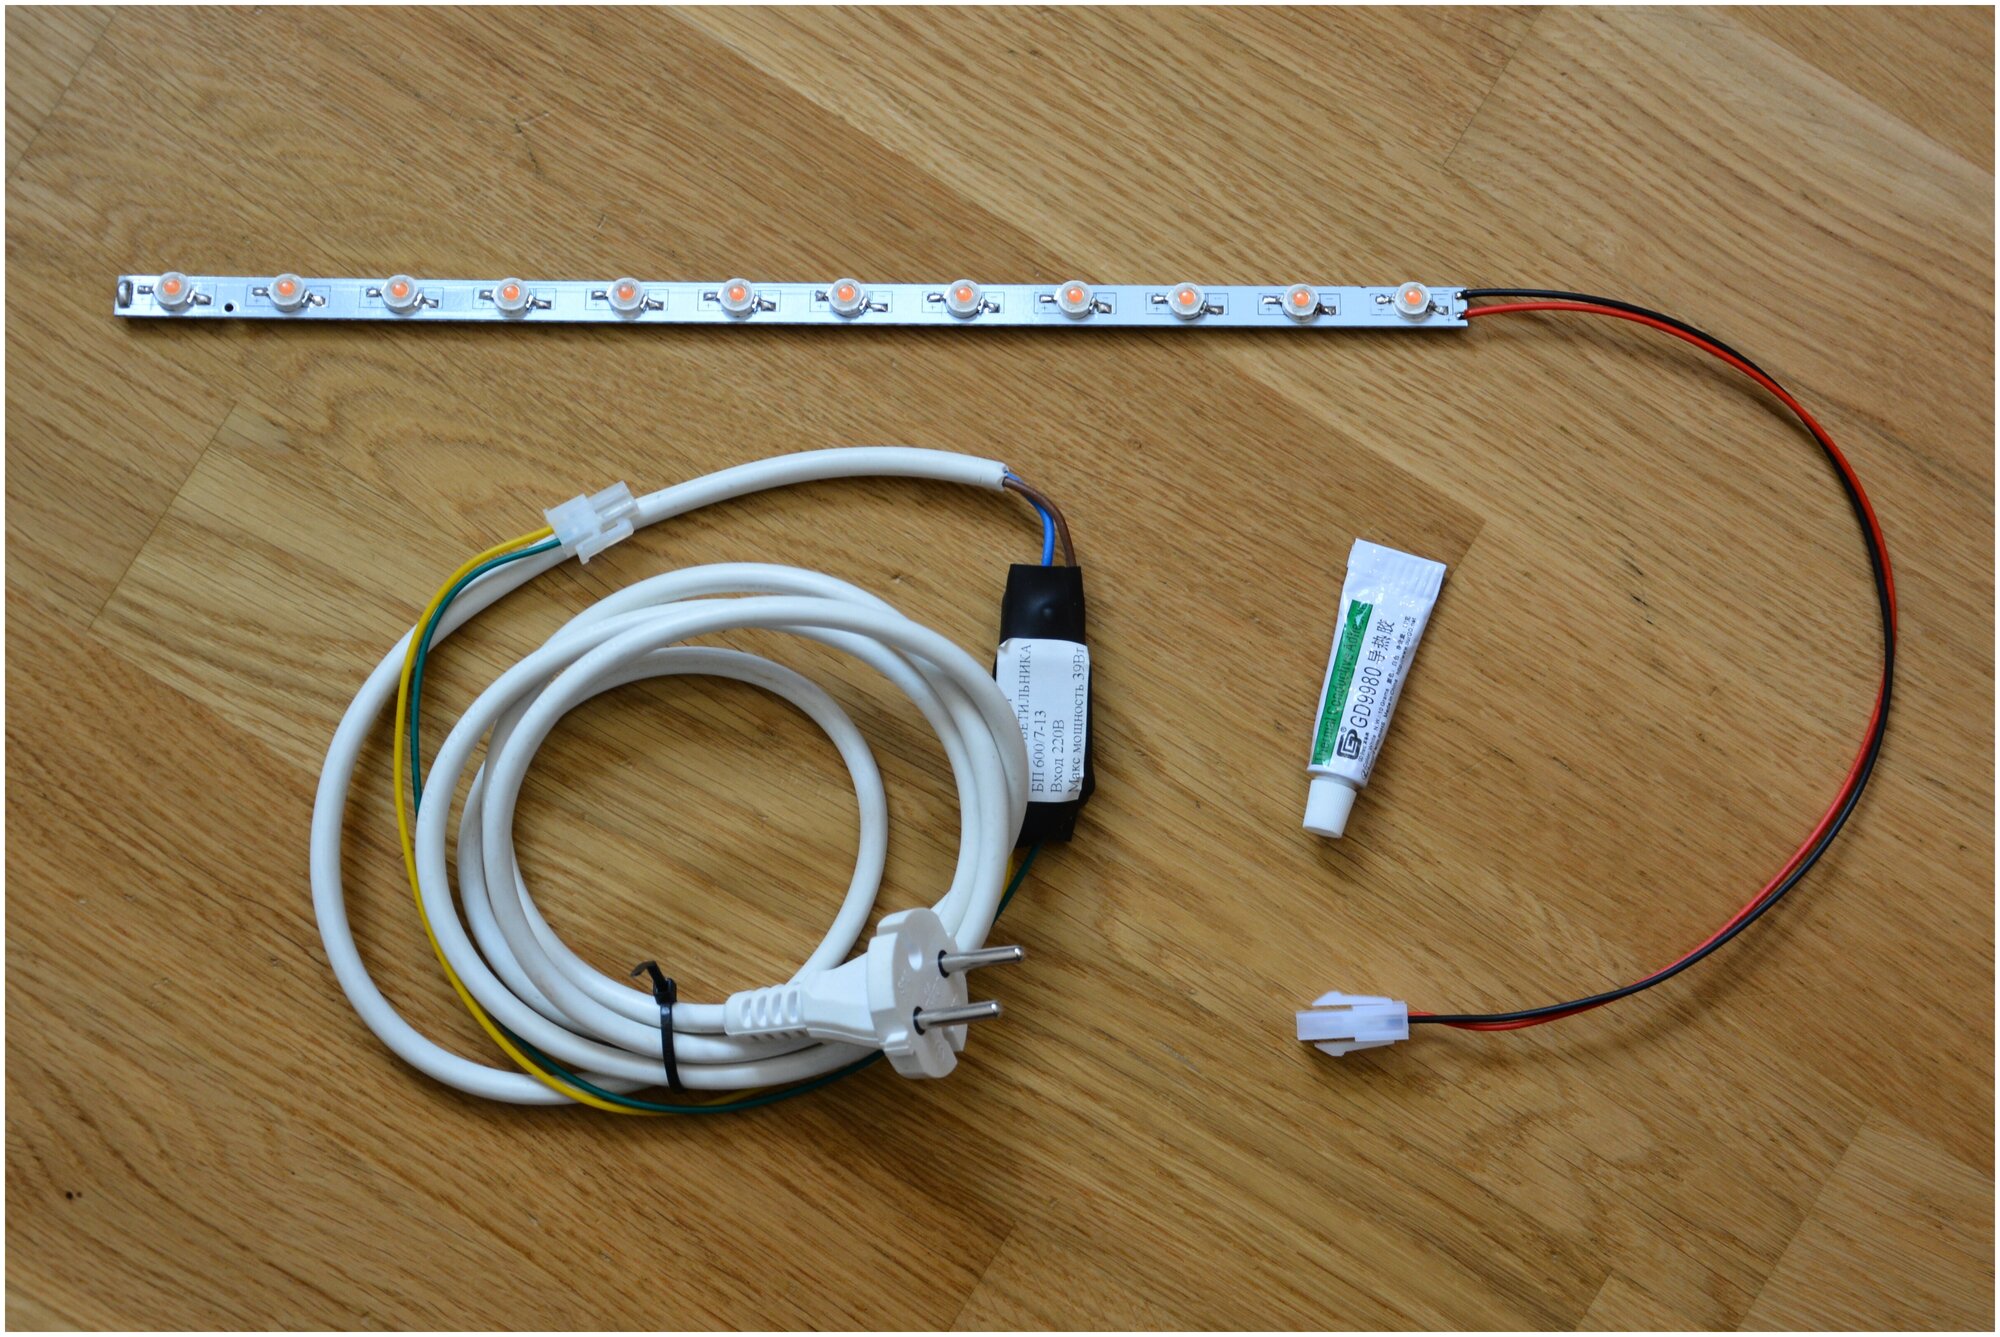 Набор DIY для самостоятельной сборки светильника мощностью 36 Вт на базе 3Вт светодиодов полного спектра на линейке 30 см